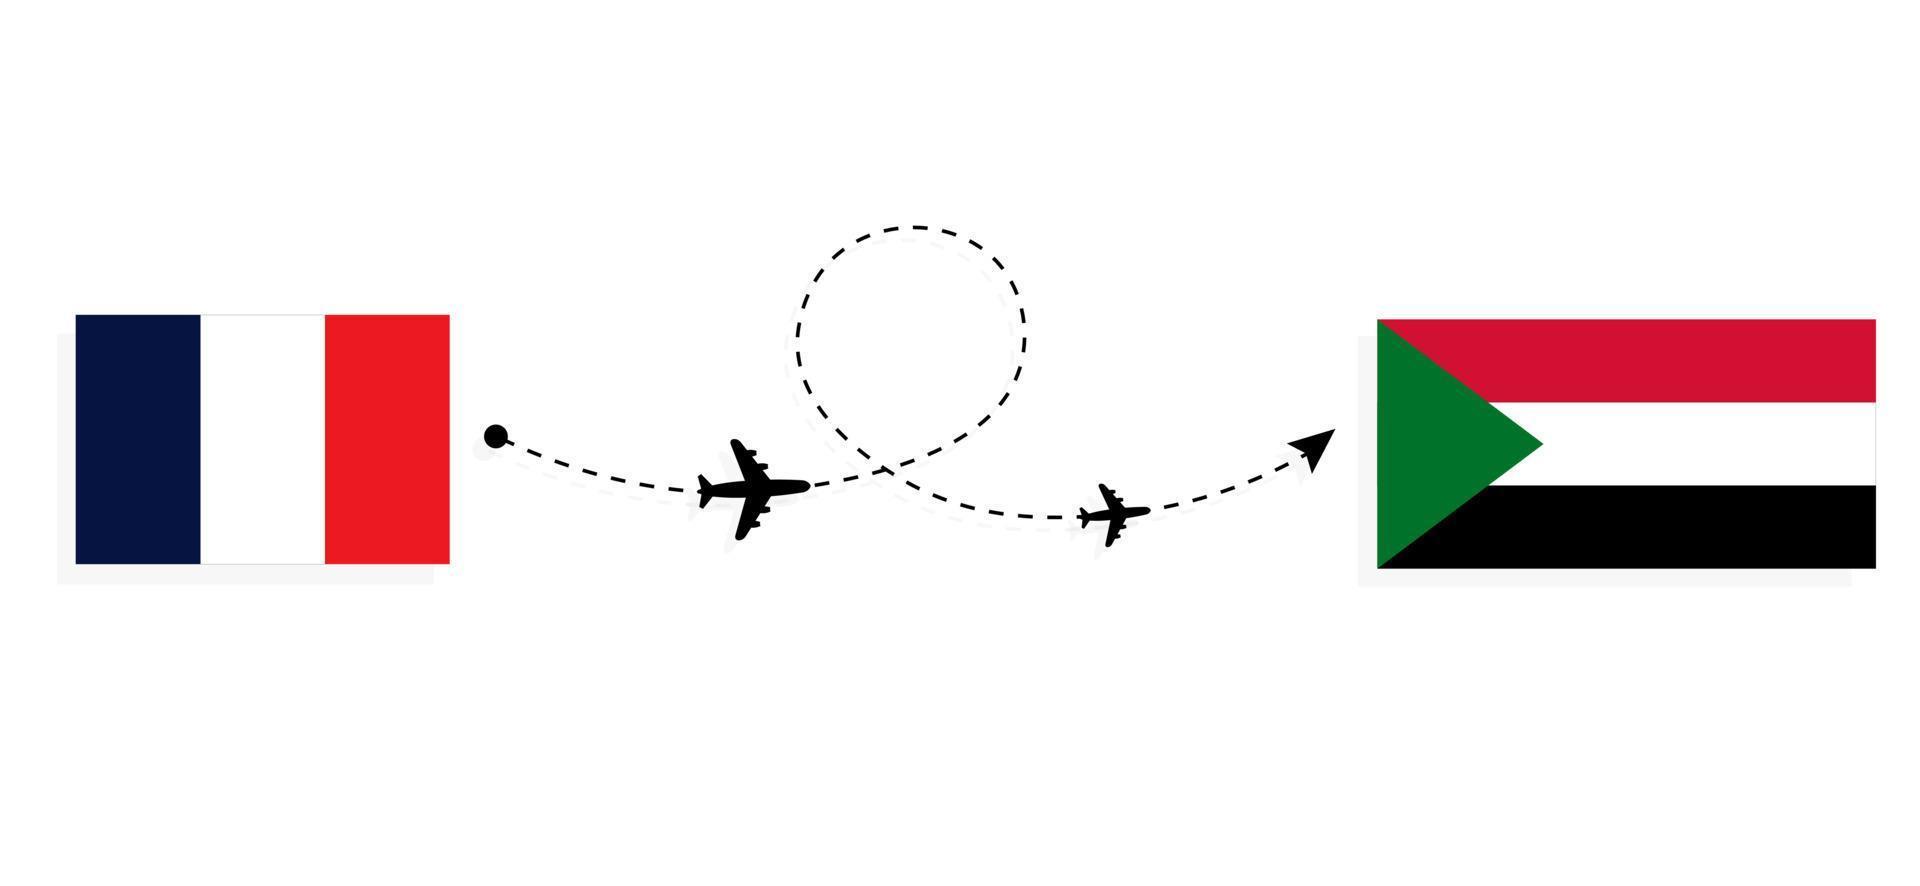 vol et voyage de la france au soudan par concept de voyage en avion de passagers vecteur